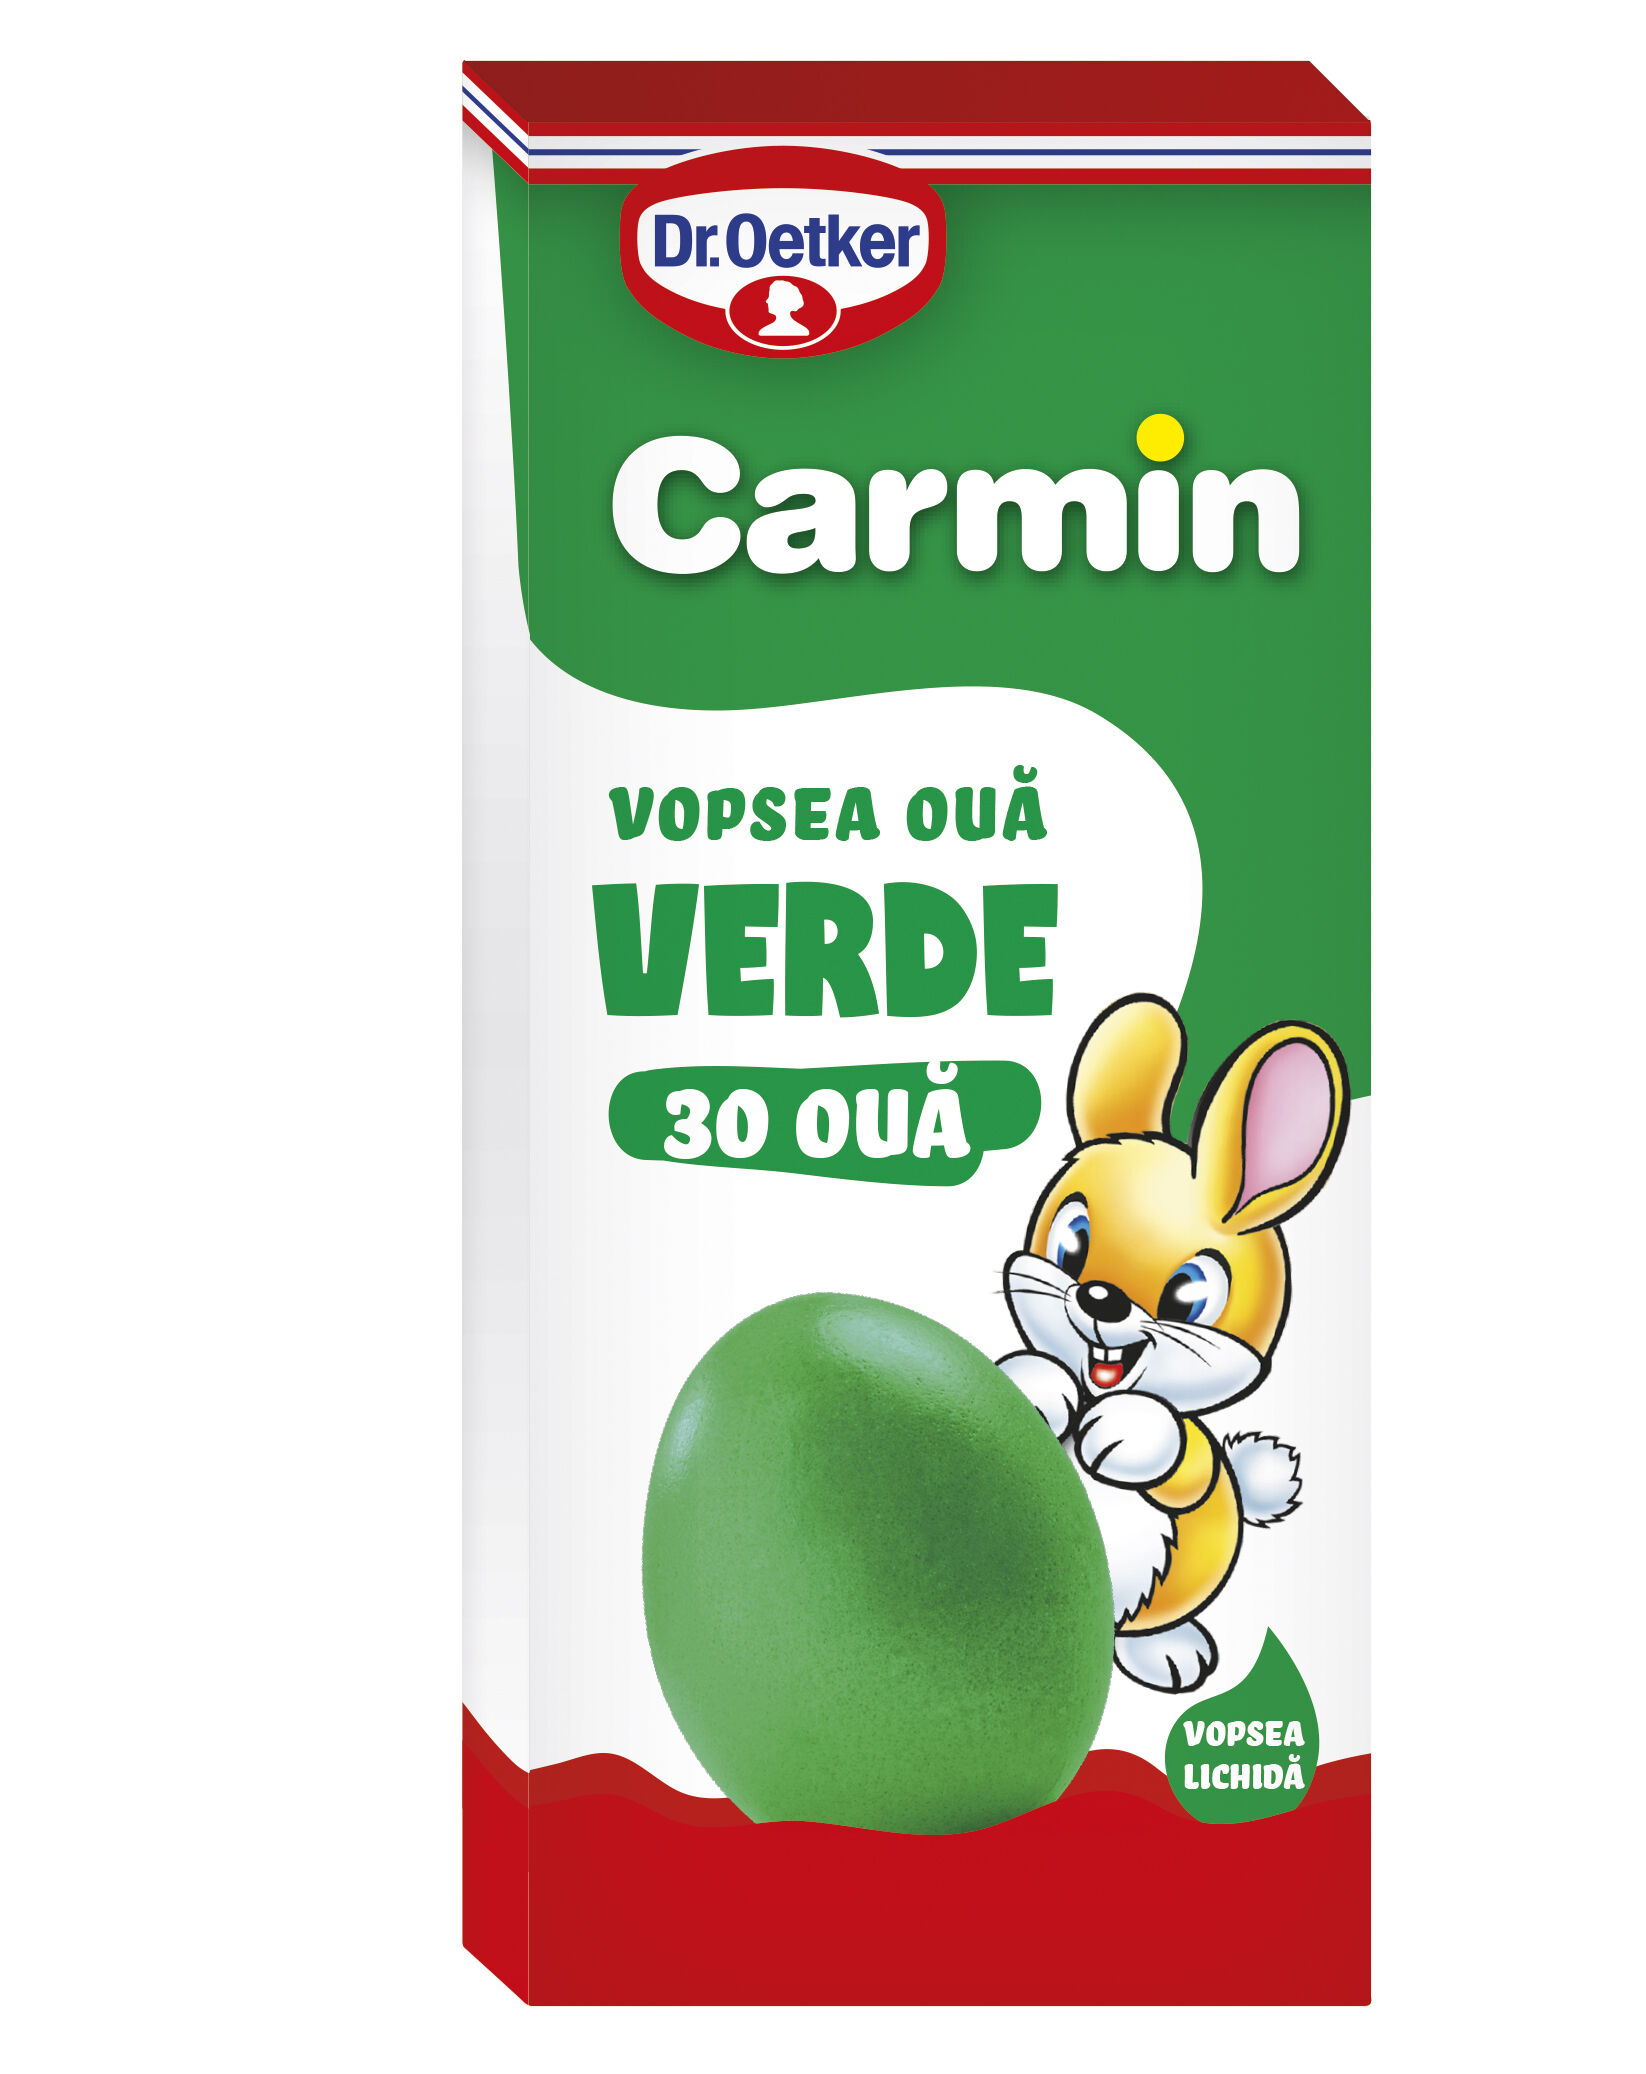 Vopsea lichida verde Carmin pentru 30 oua